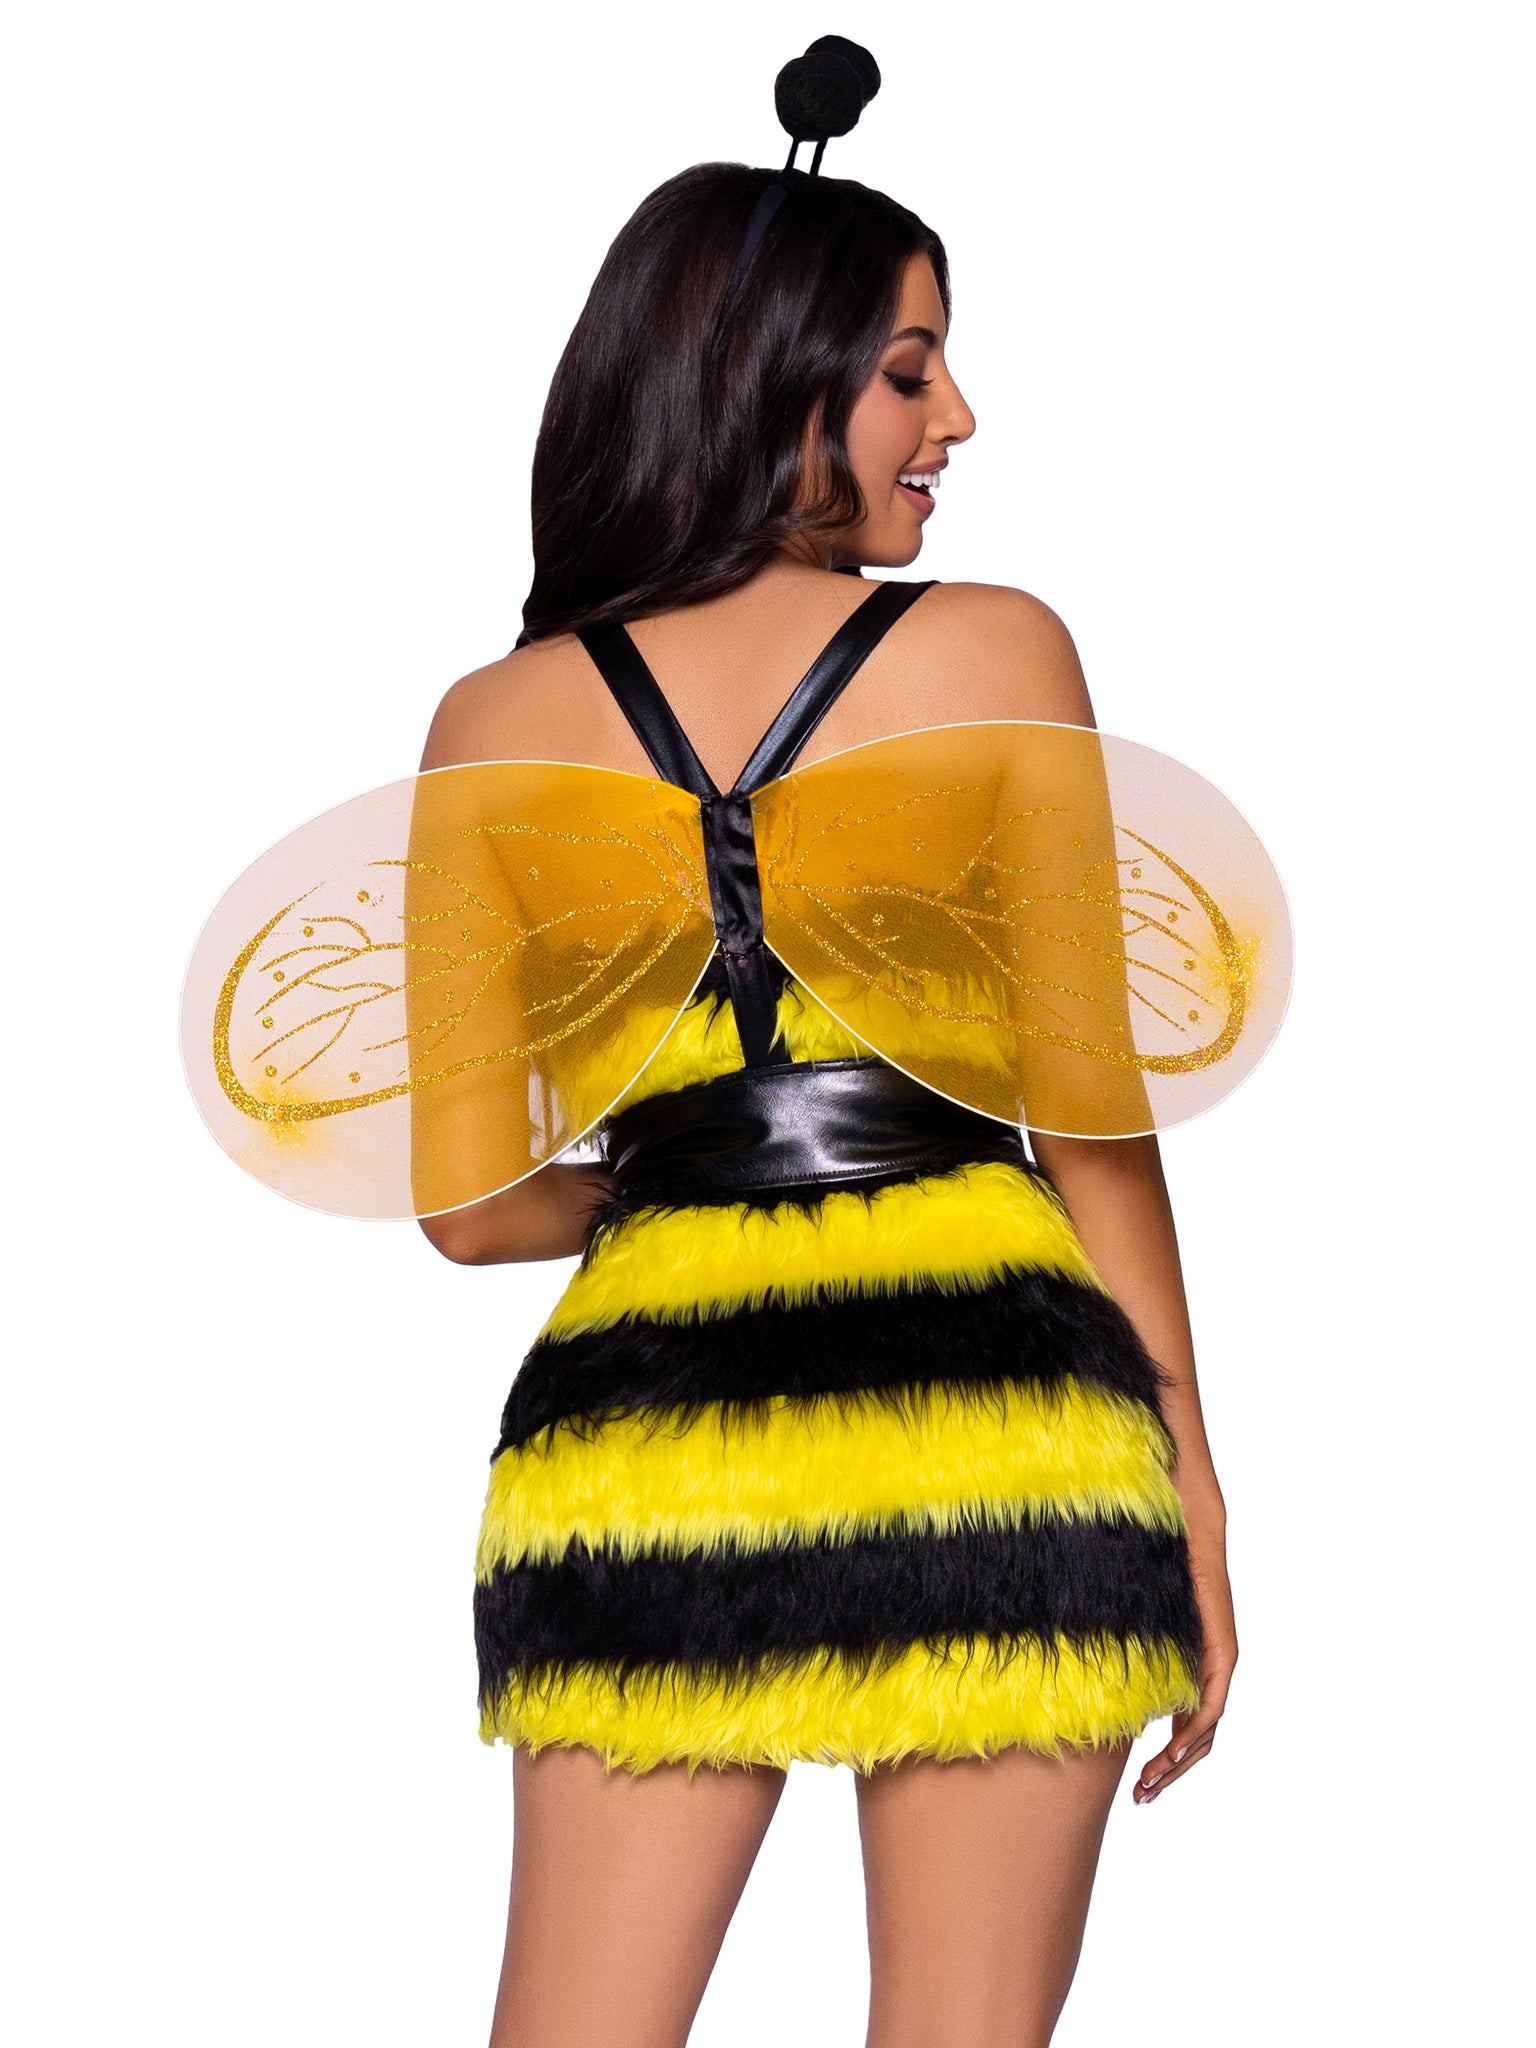 Queen Bee Sexy Bodysuit Costume, Accessories